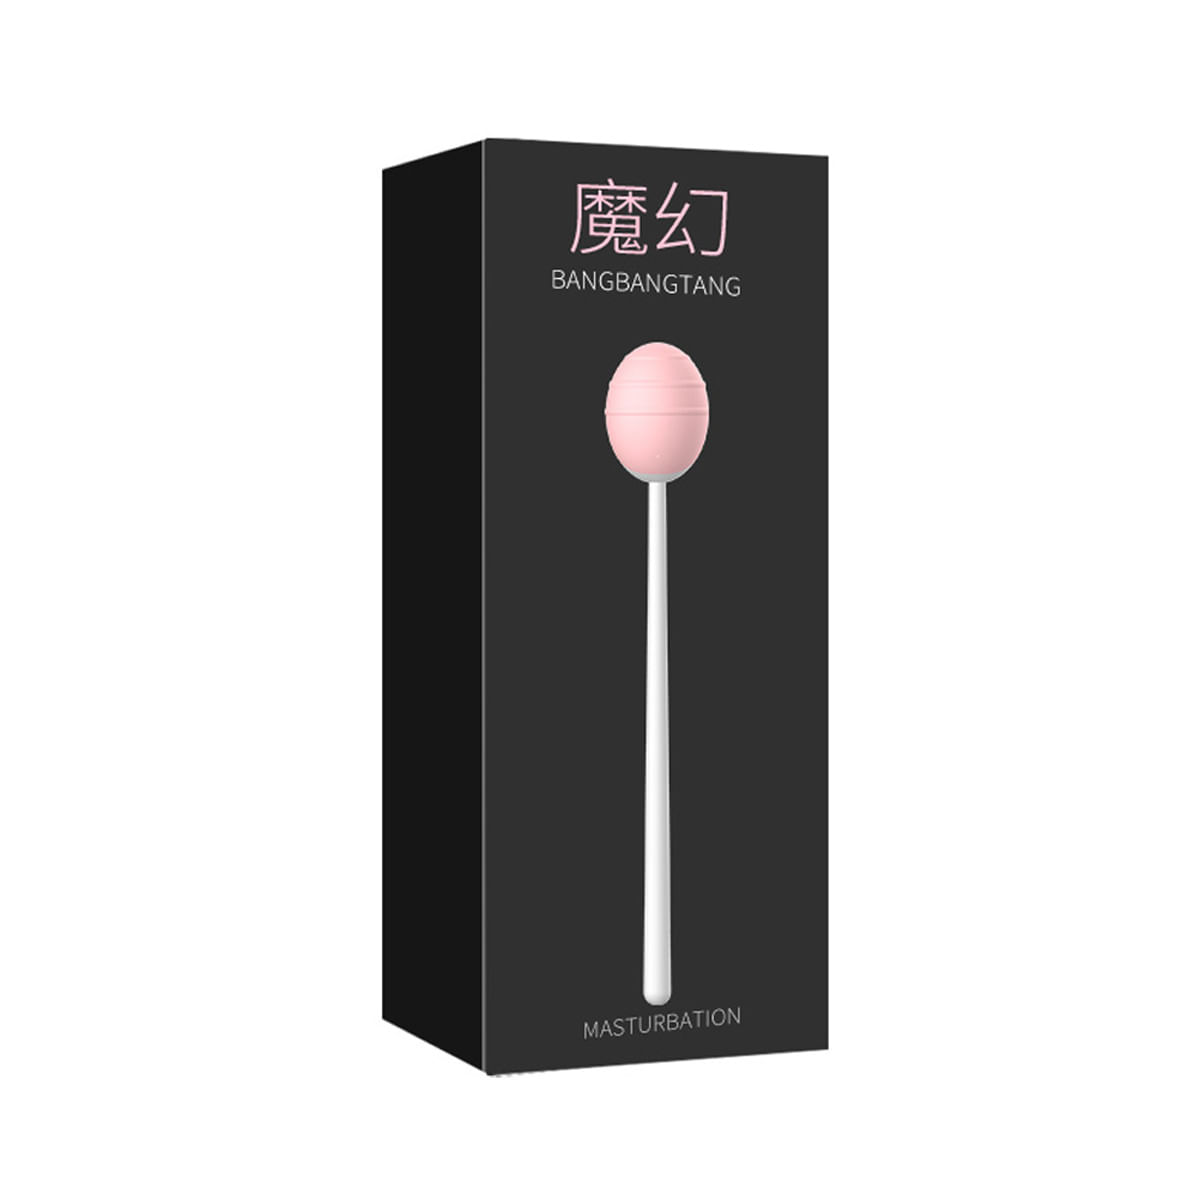 Magical Lollipop Vibration Vibrador com Dupla Estimulação com 20 Modos de Vibração Miss Collection